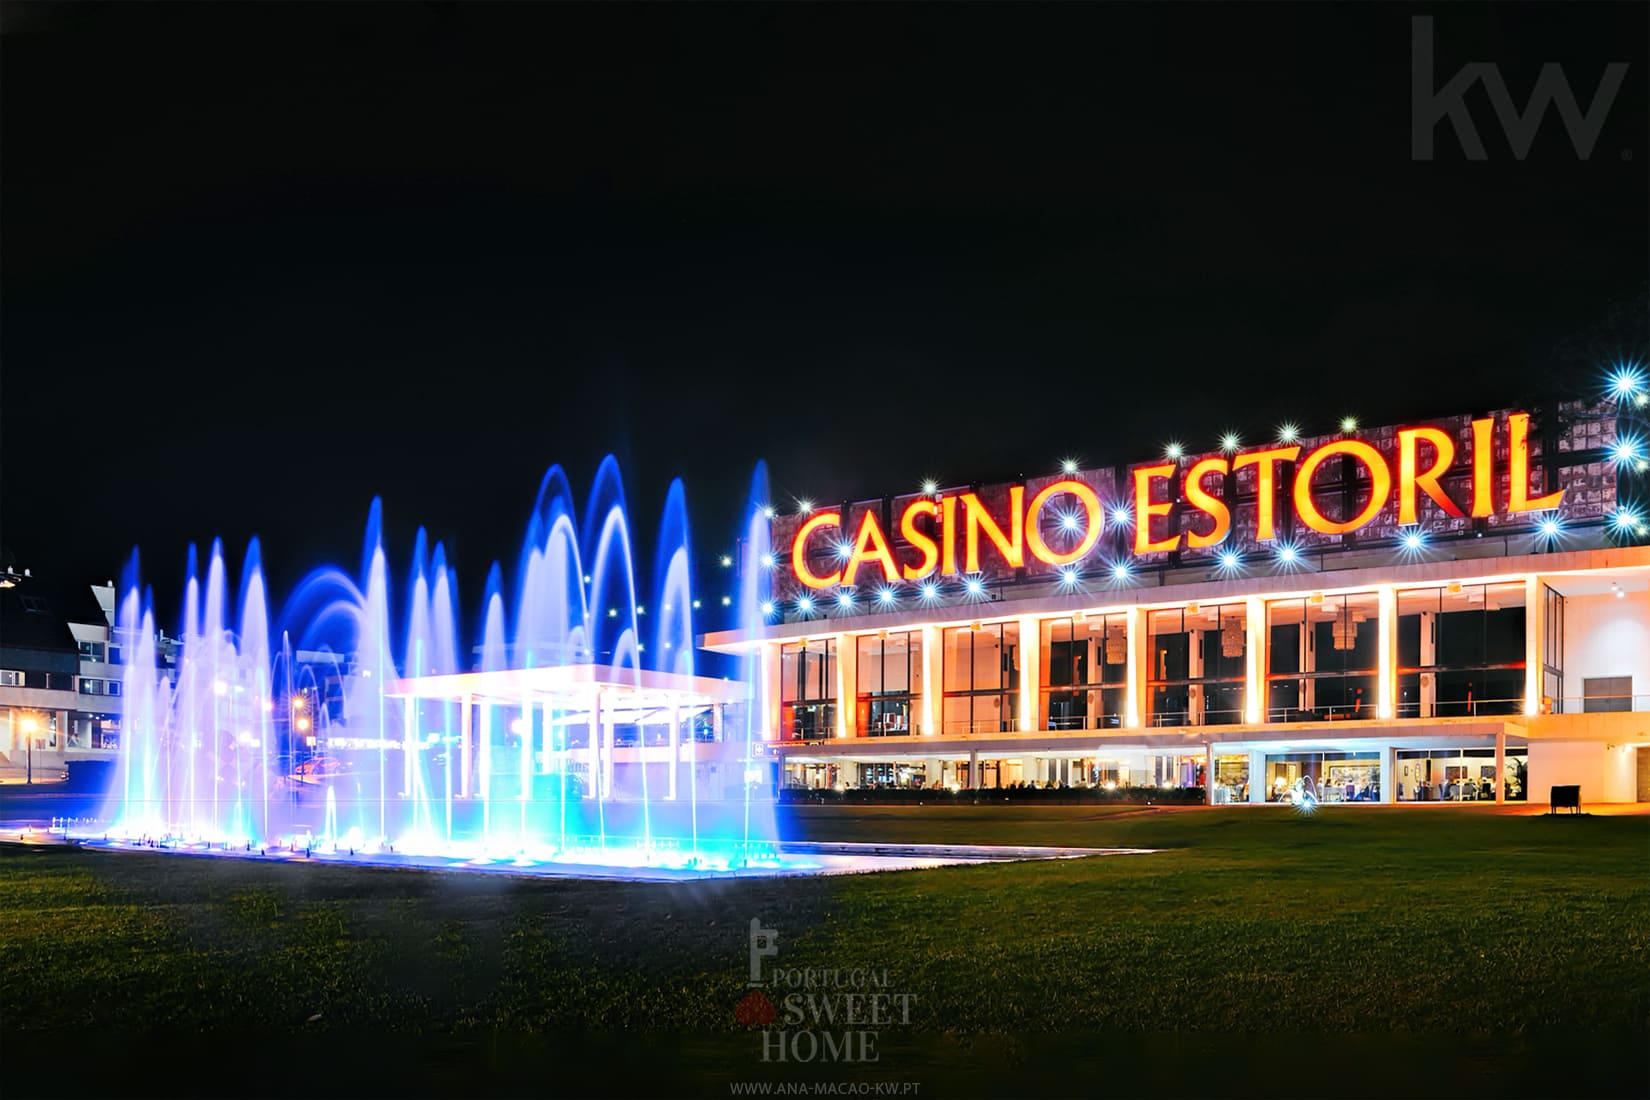 Vue du Casino d'Estoril, situé à proximité